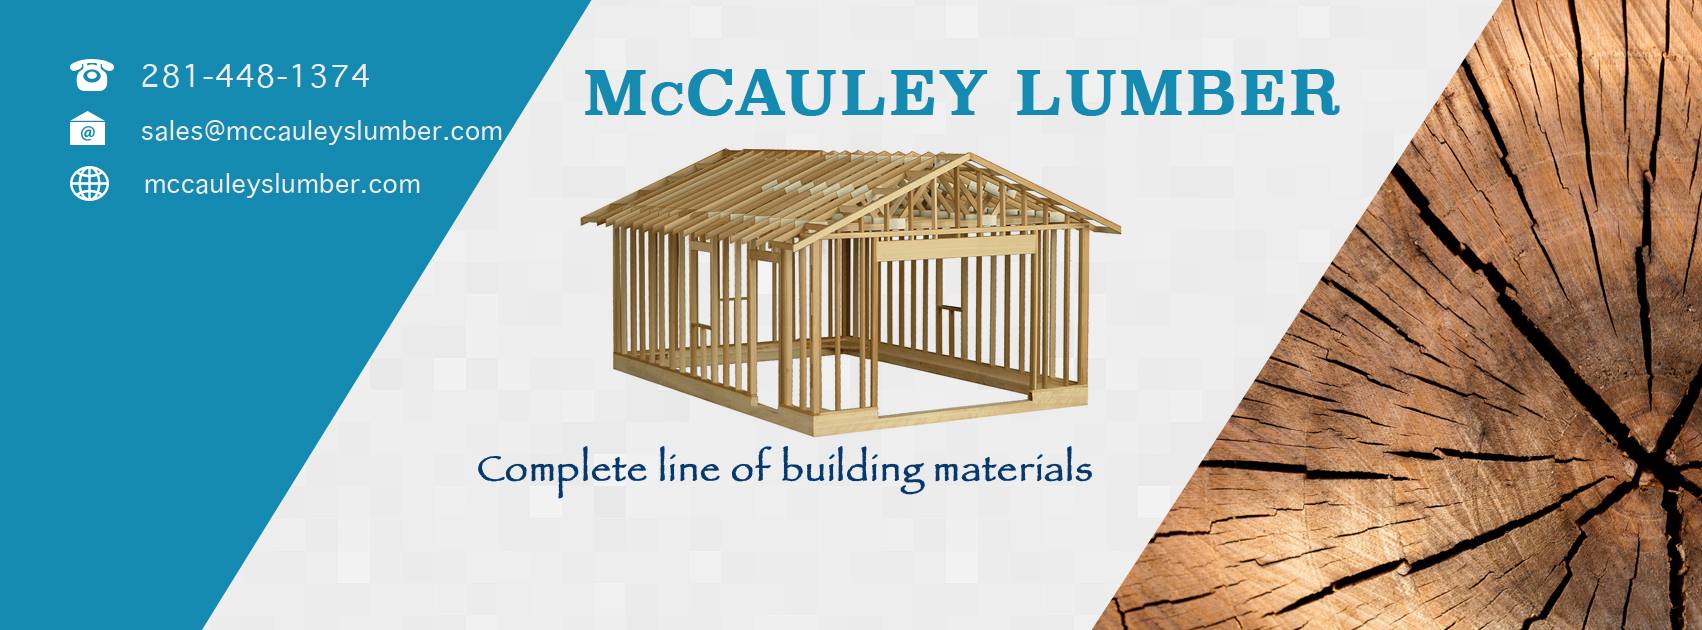 McCauley Lumber